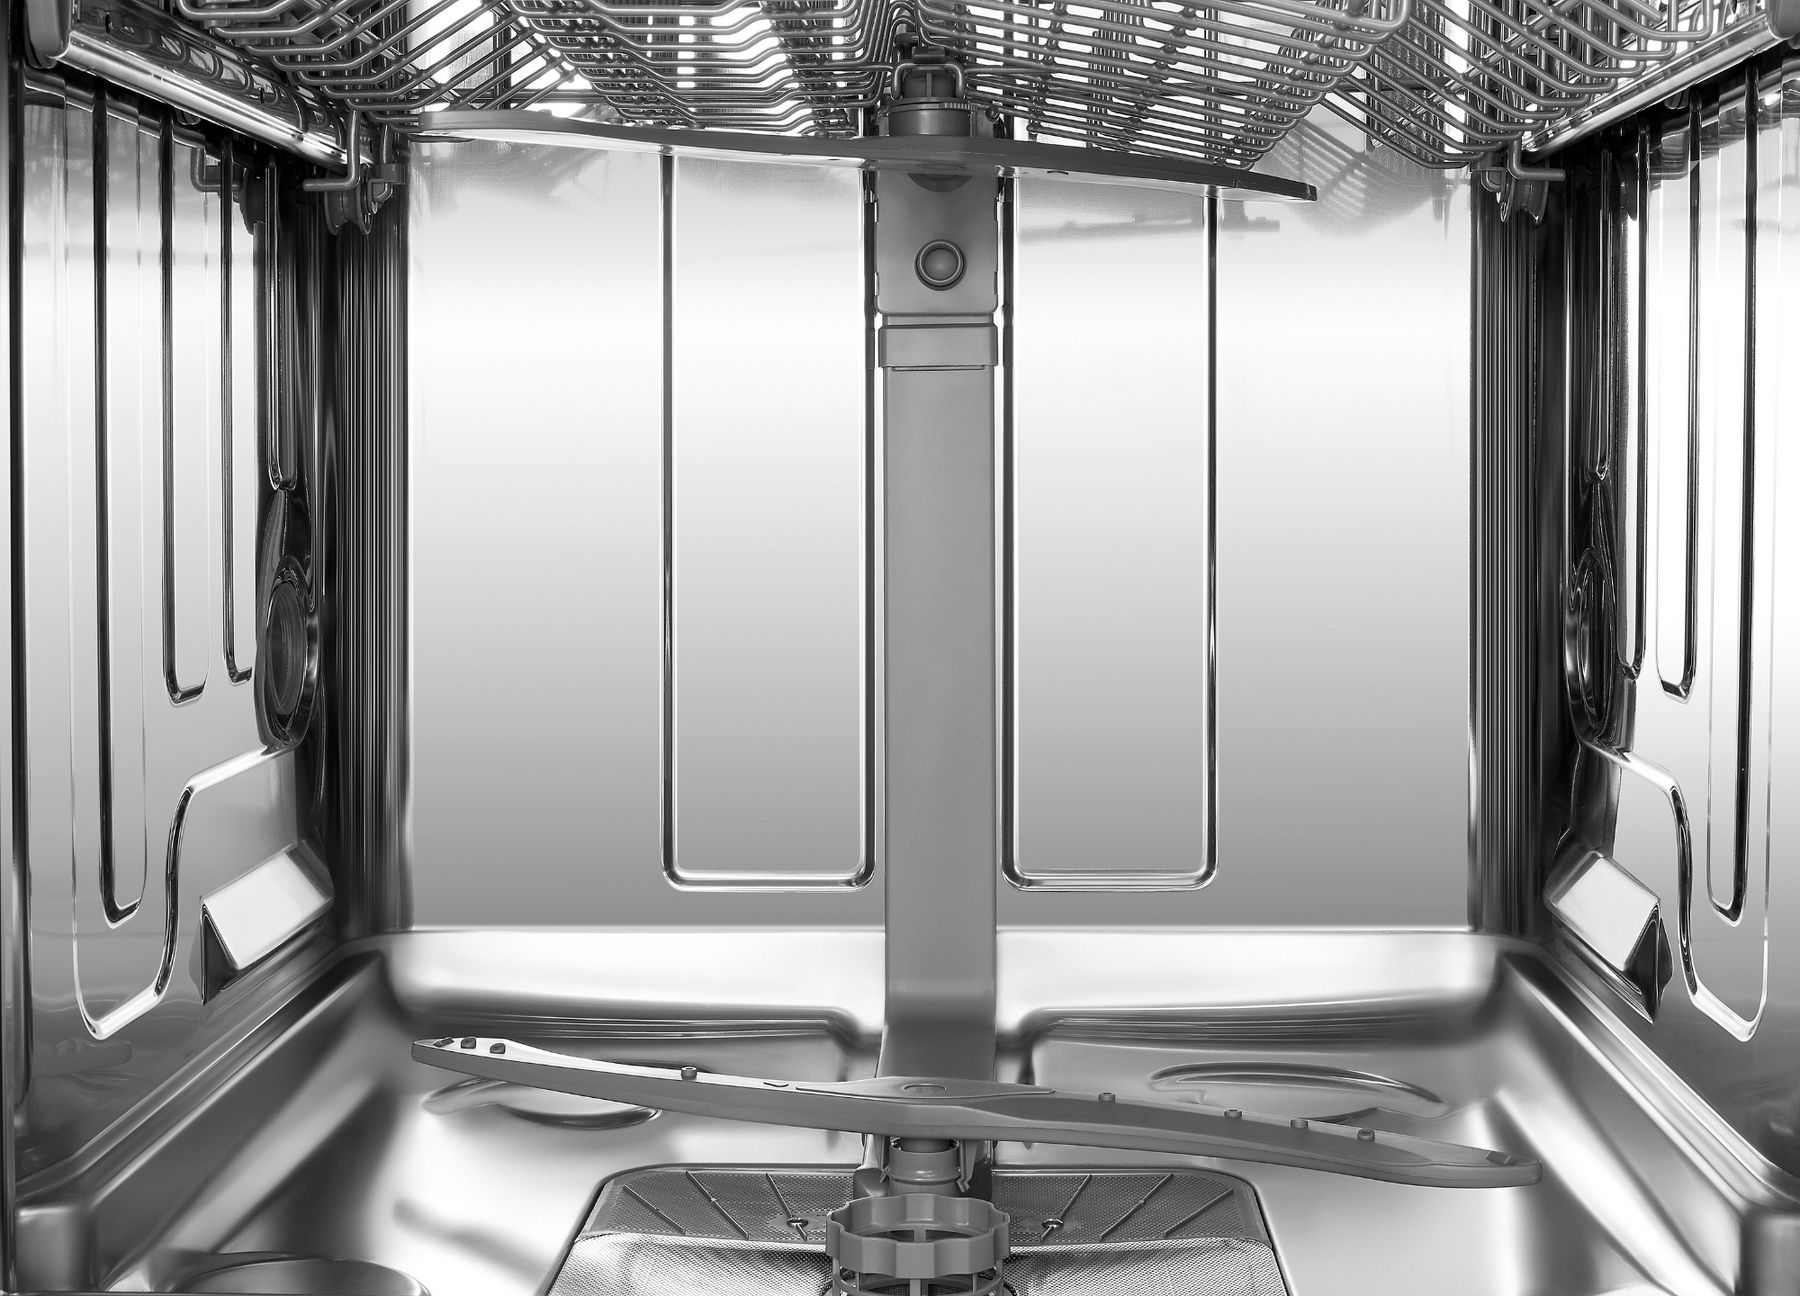 老板电器洗碗机 | WQP12-W602S | 600mm（宽）